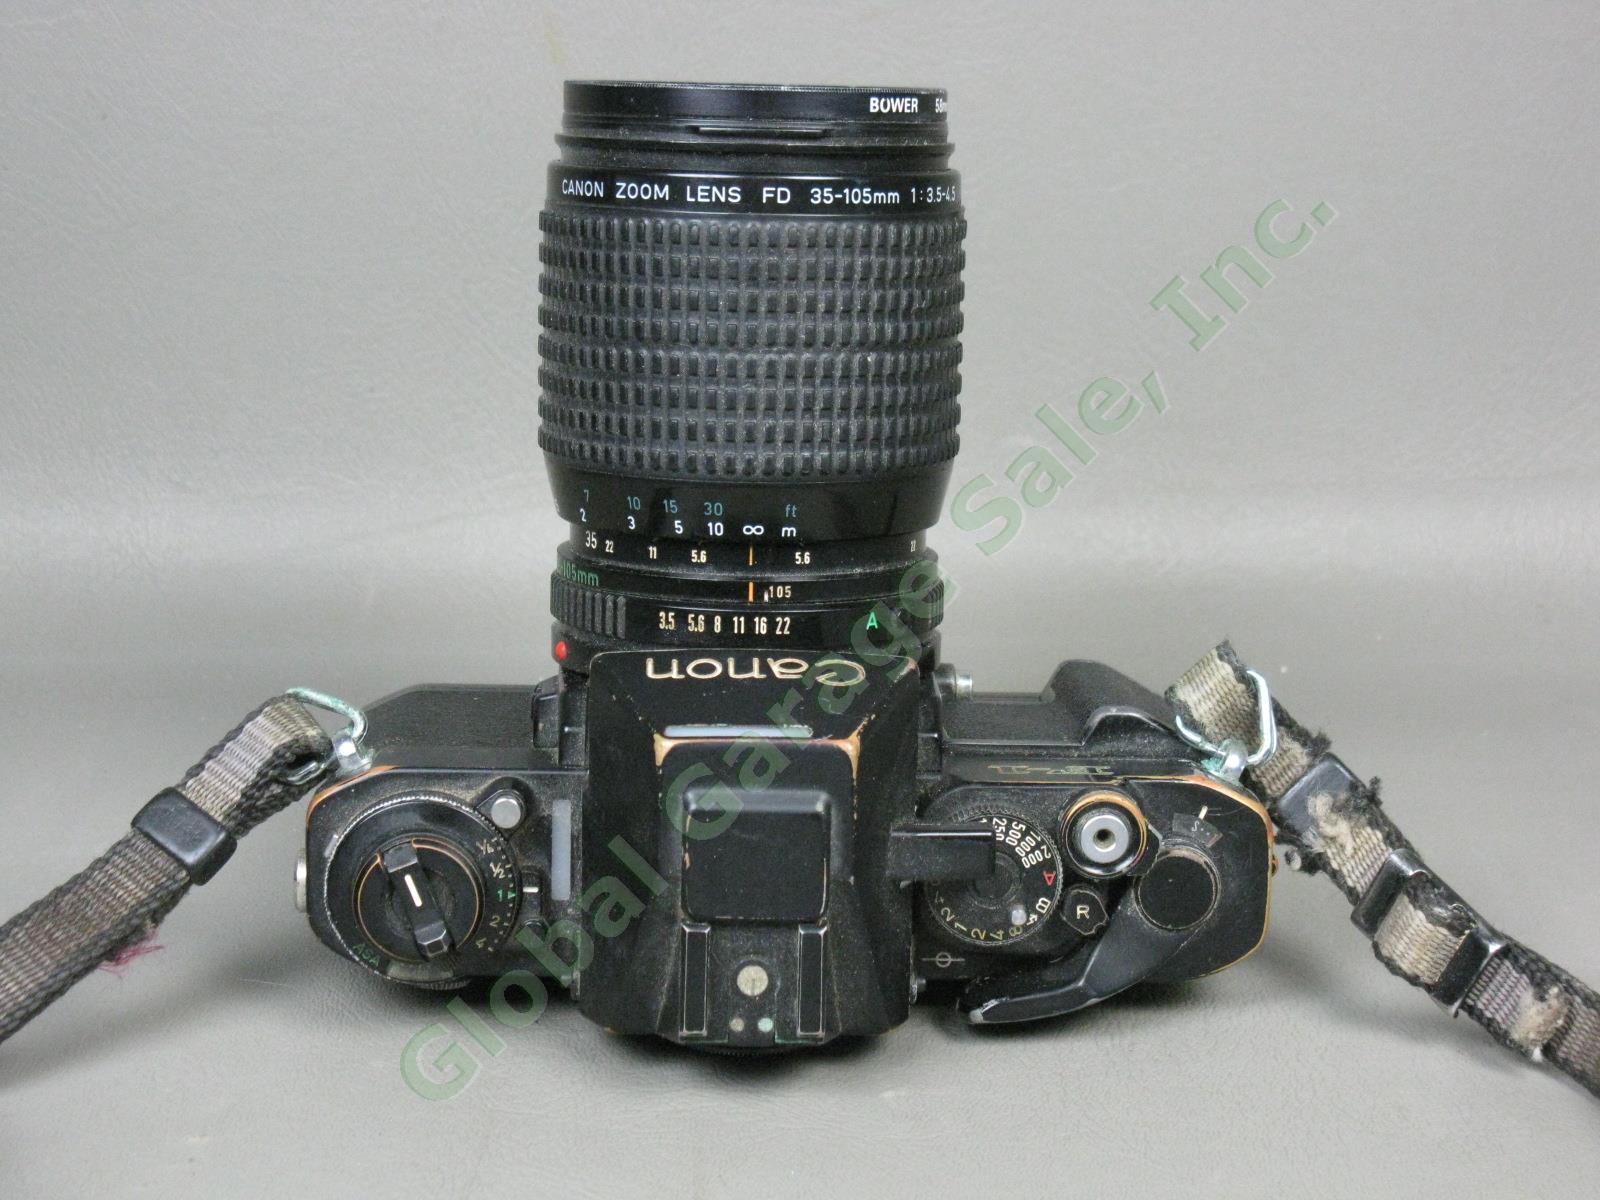 Vtg 1970s Canon F-1 35mm SLR Film Camera FD 35-105mm 1:3.5-4.5 Zoom Lens As-Is 4